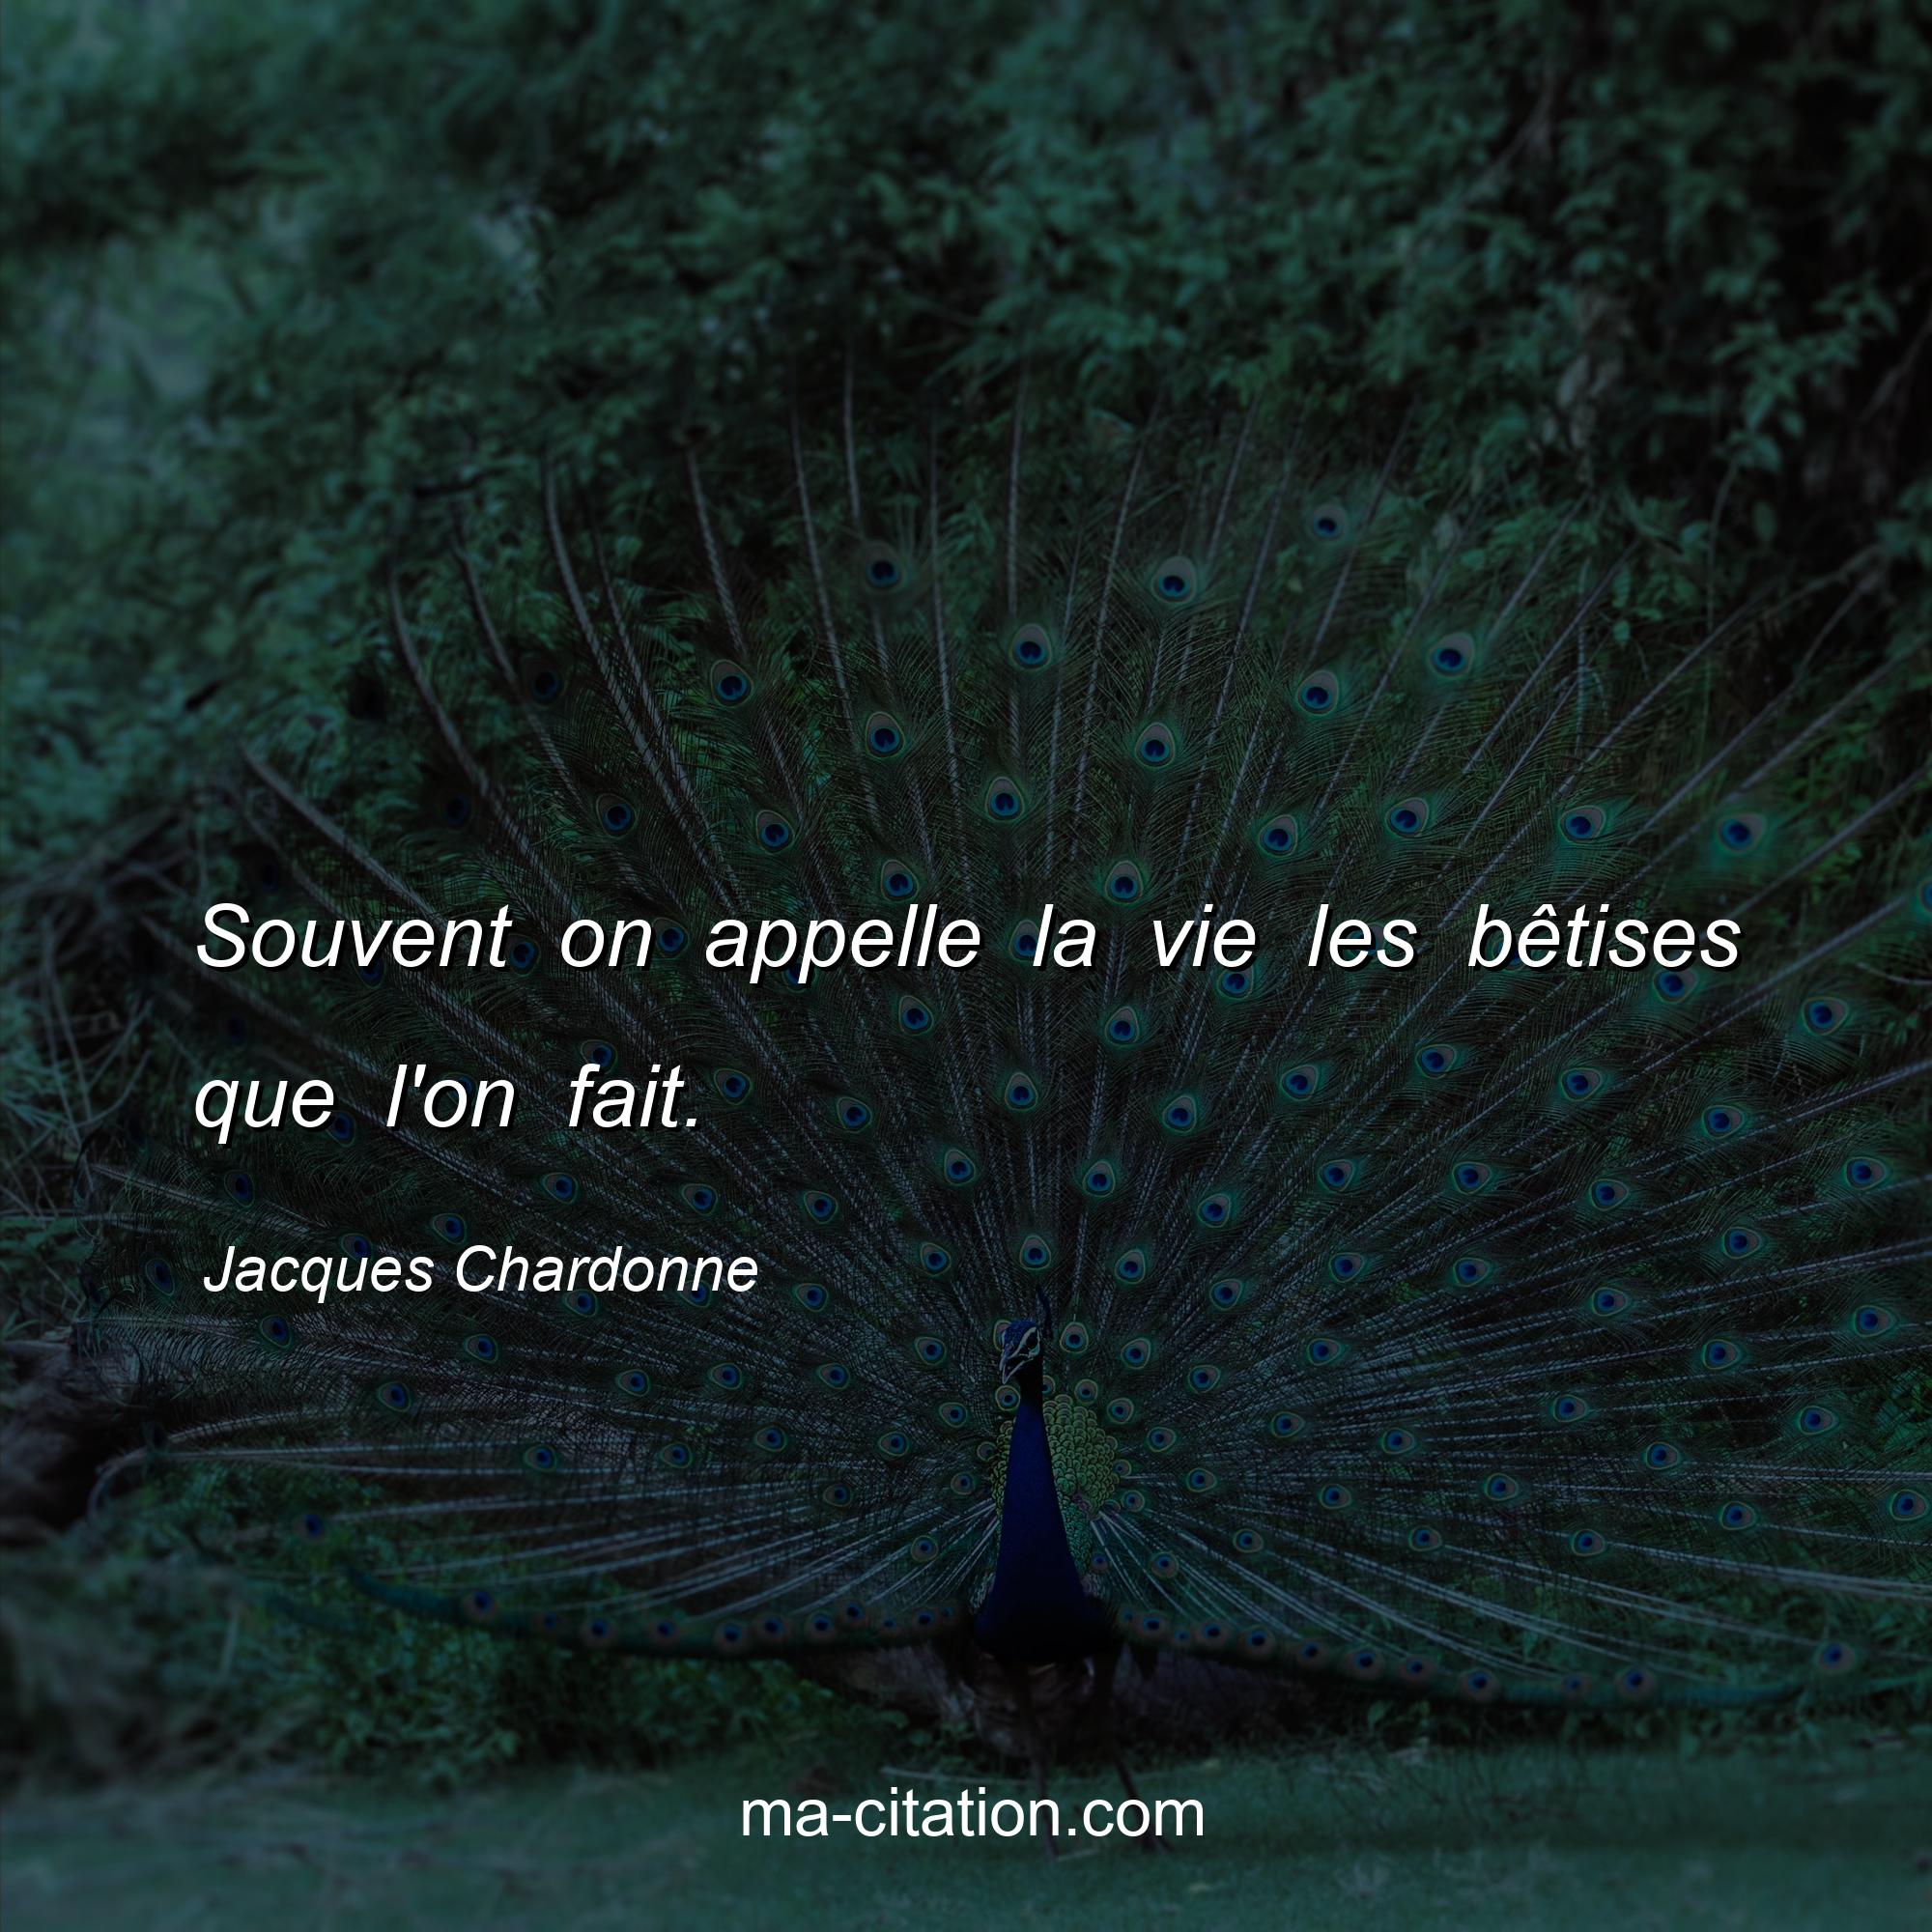 Jacques Chardonne : Souvent on appelle la vie les bêtises que l'on fait.